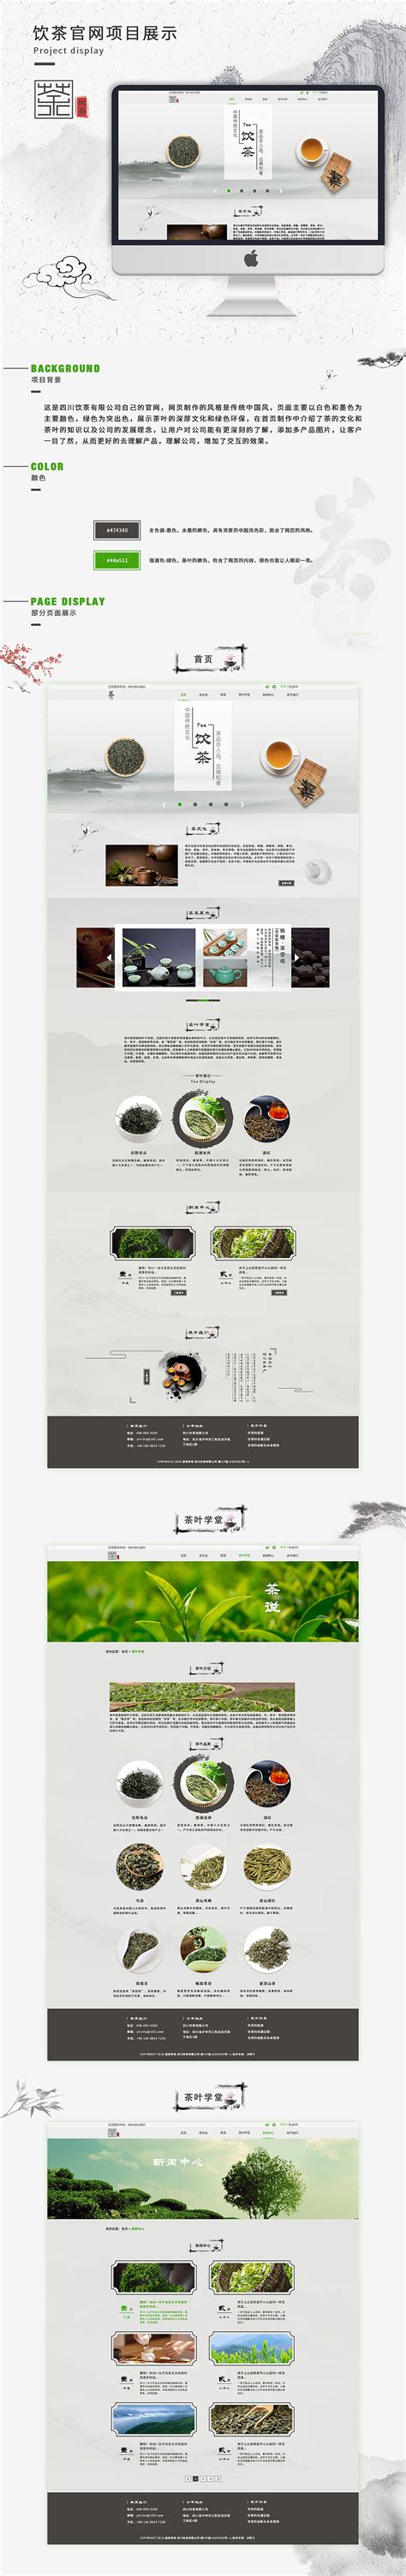 茶文化网站模板